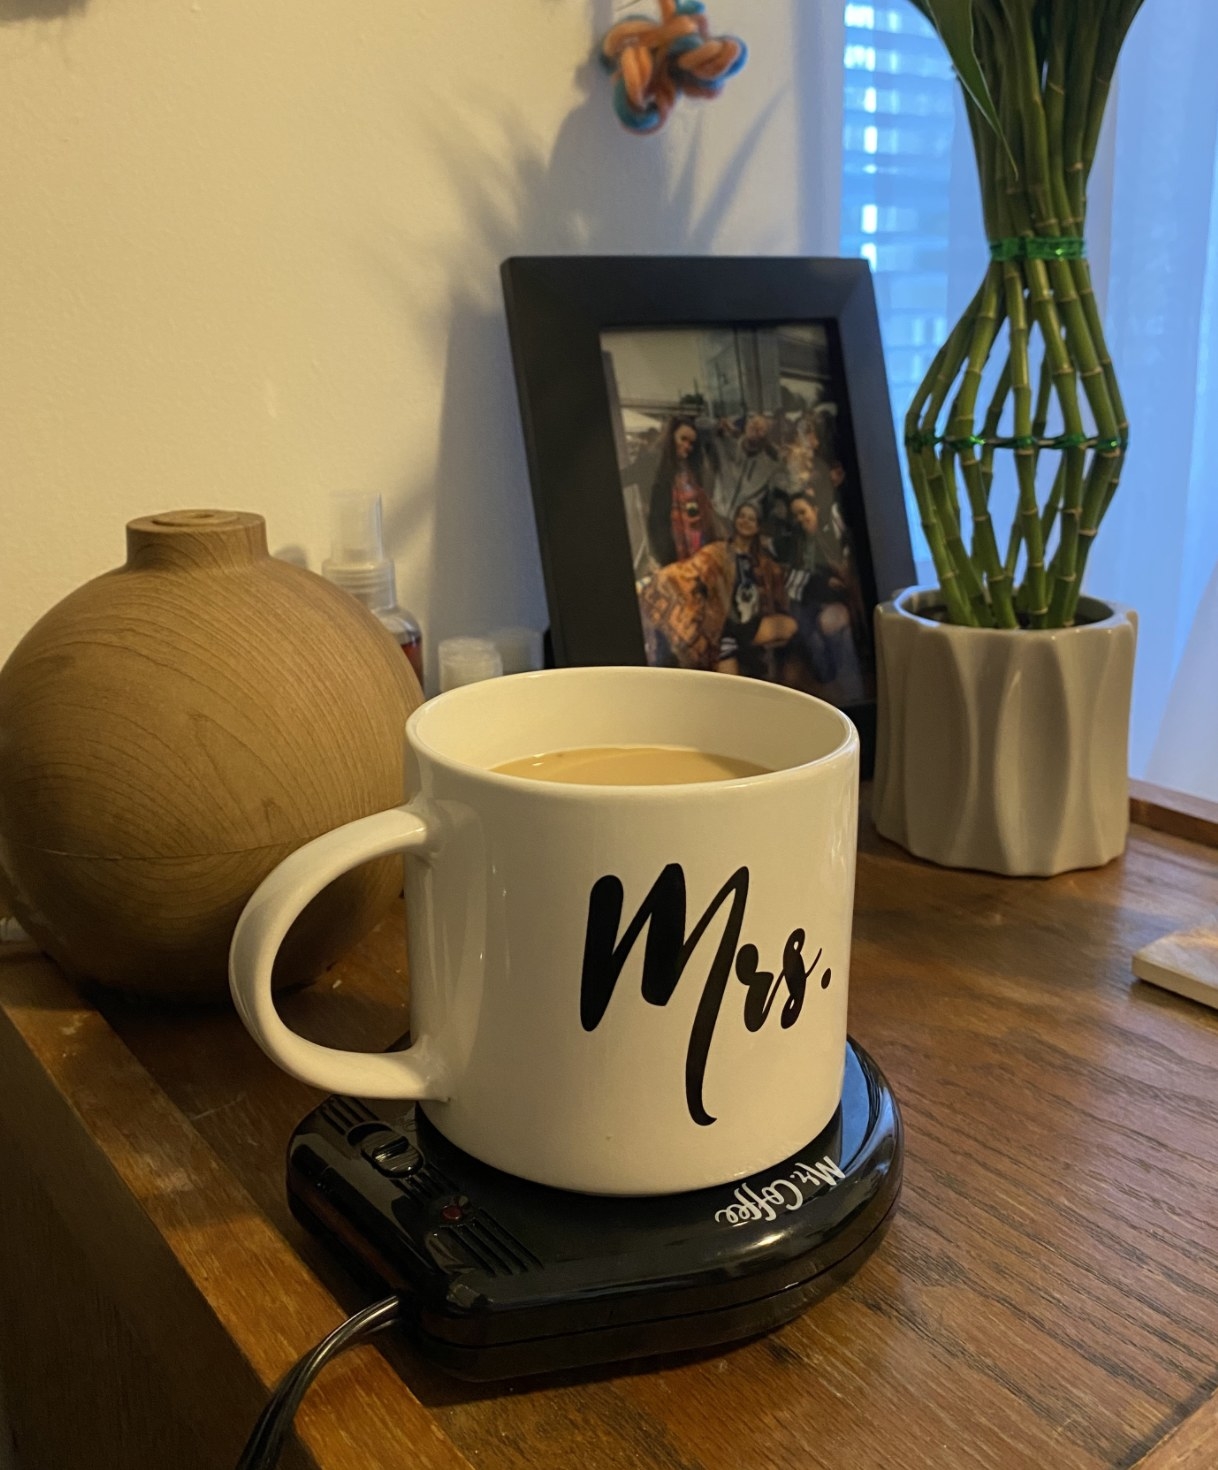 a reviewer&#x27;s image of their mug on the mug warmer